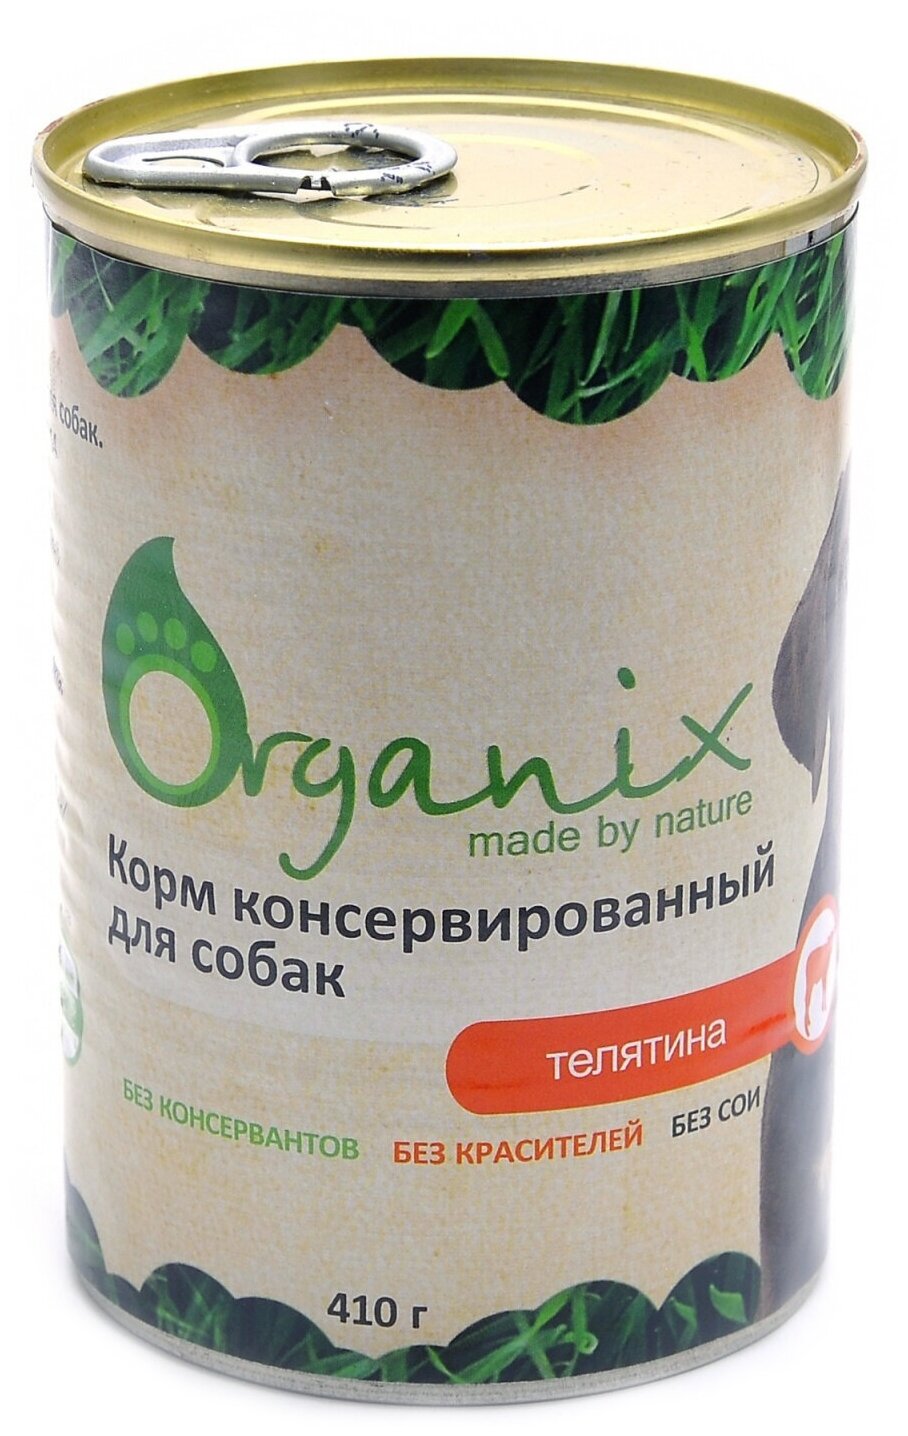 Organix консервы Консервы для собак телятина 11вн42 0,41 кг 19662 (10 шт)